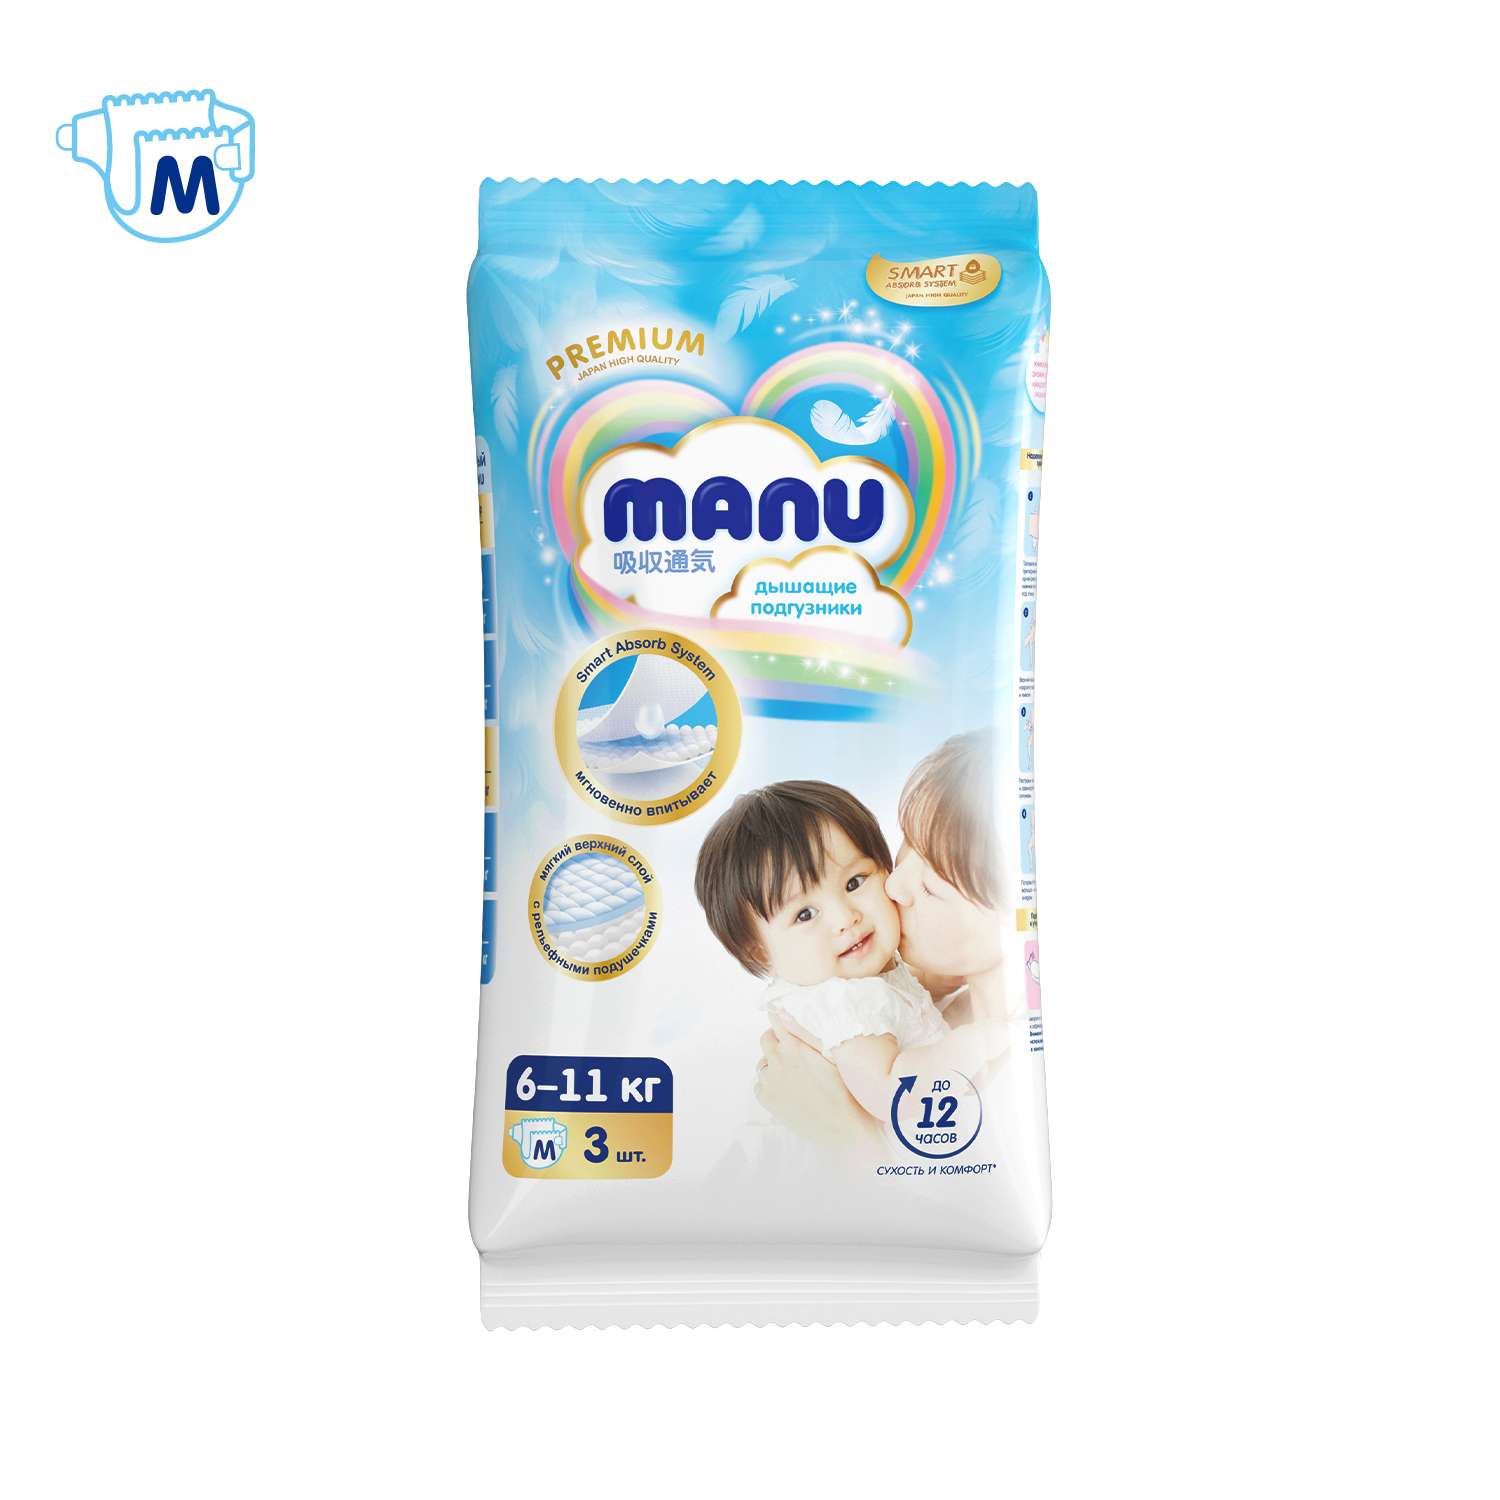 Подгузники Manu Premium M 6-11кг 3шт - фото 9